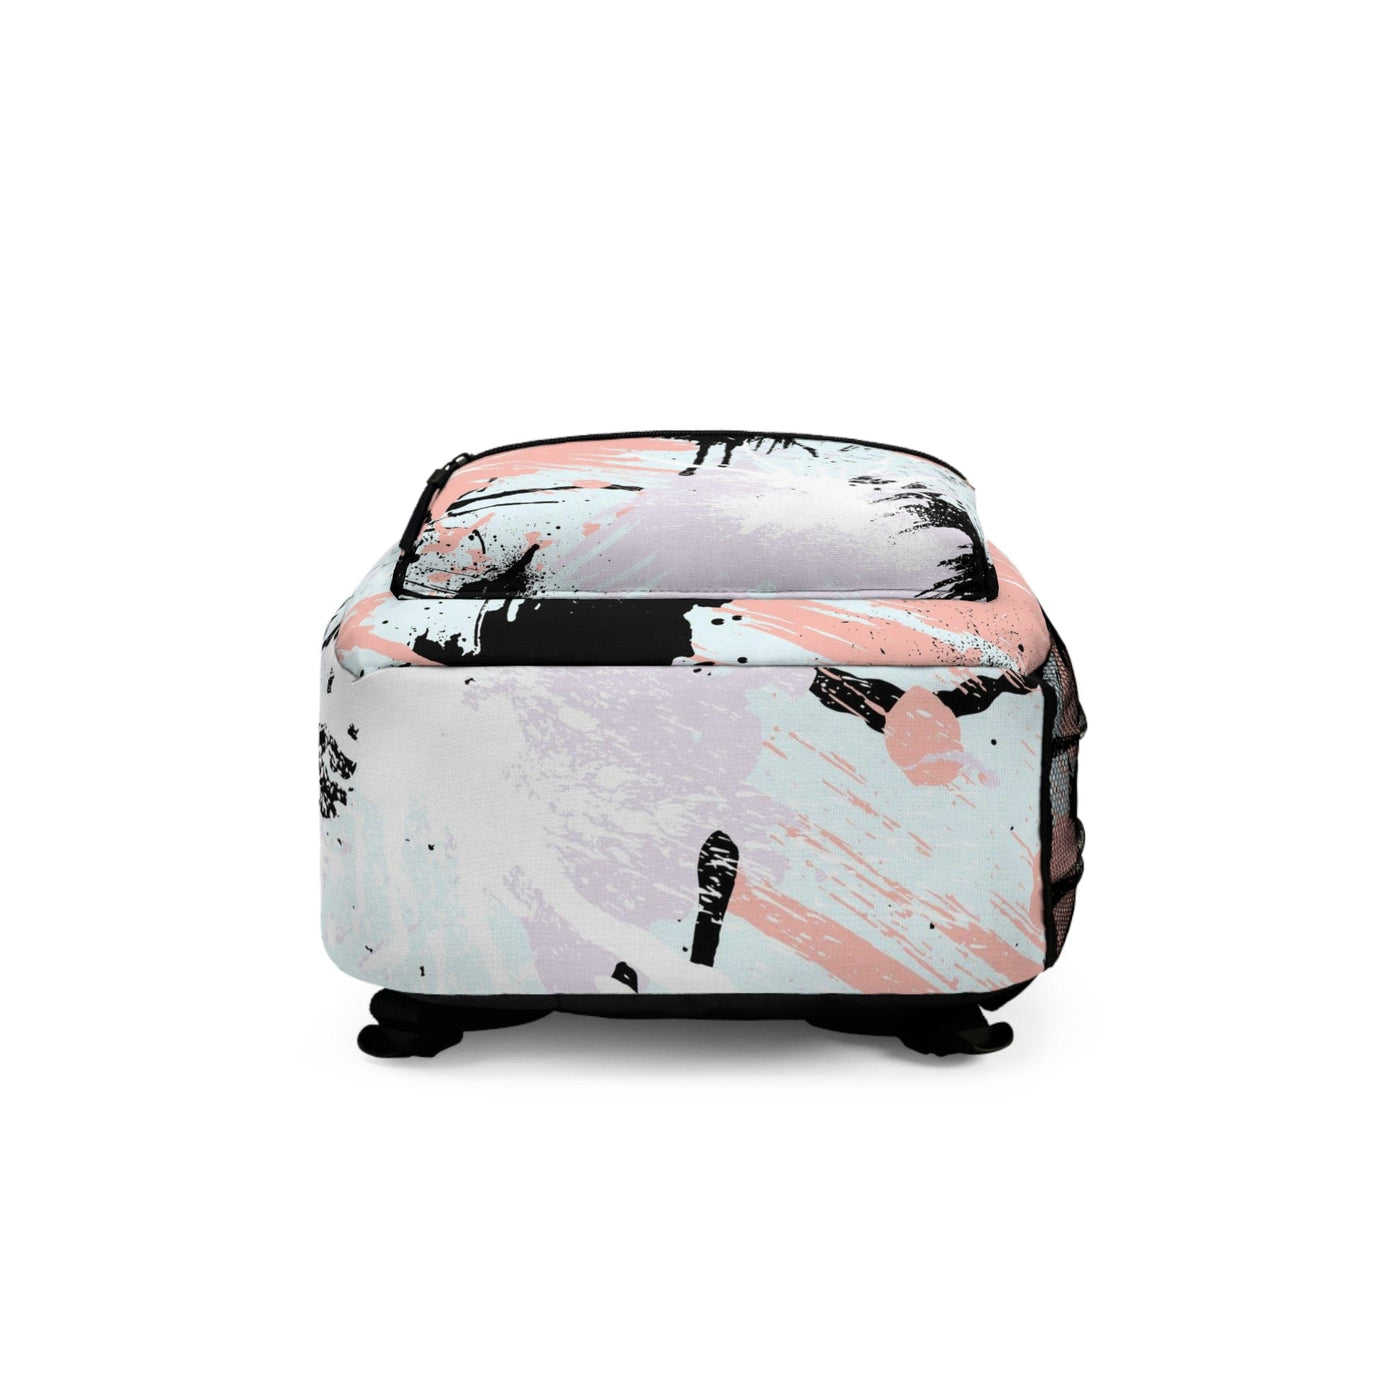 Backpack Work/school/leisure - Waterproof Abstract Pink Black White Paint